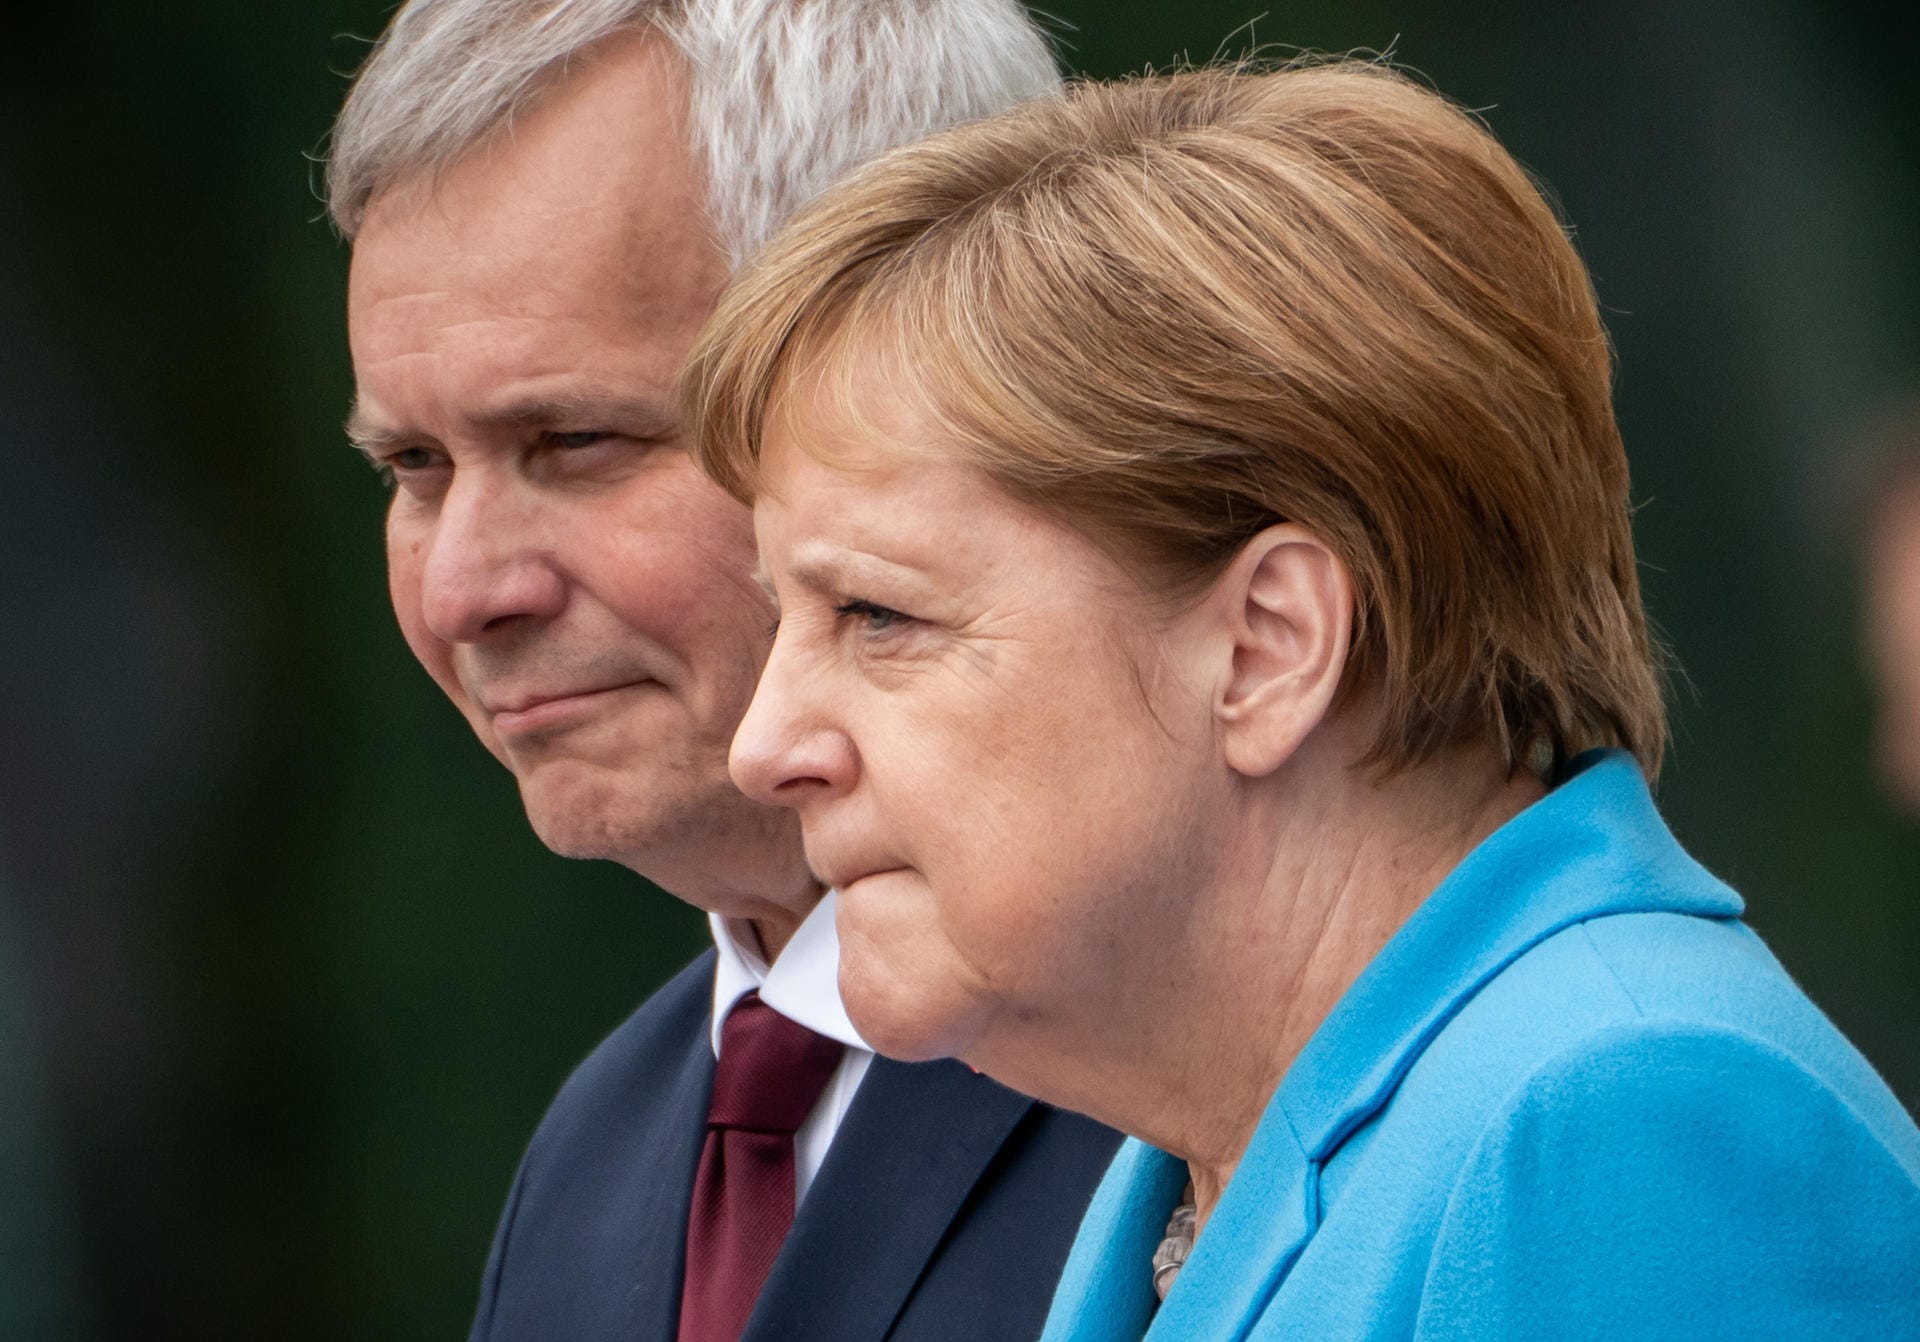 Wieder ein Zitteranfall bei Kanzlerin Angela Merkel: Bei einem Staatsbesuch des finnischen Minsterpräsidenten Antti Rinne zeigte sich bei Merkel das Zittern.